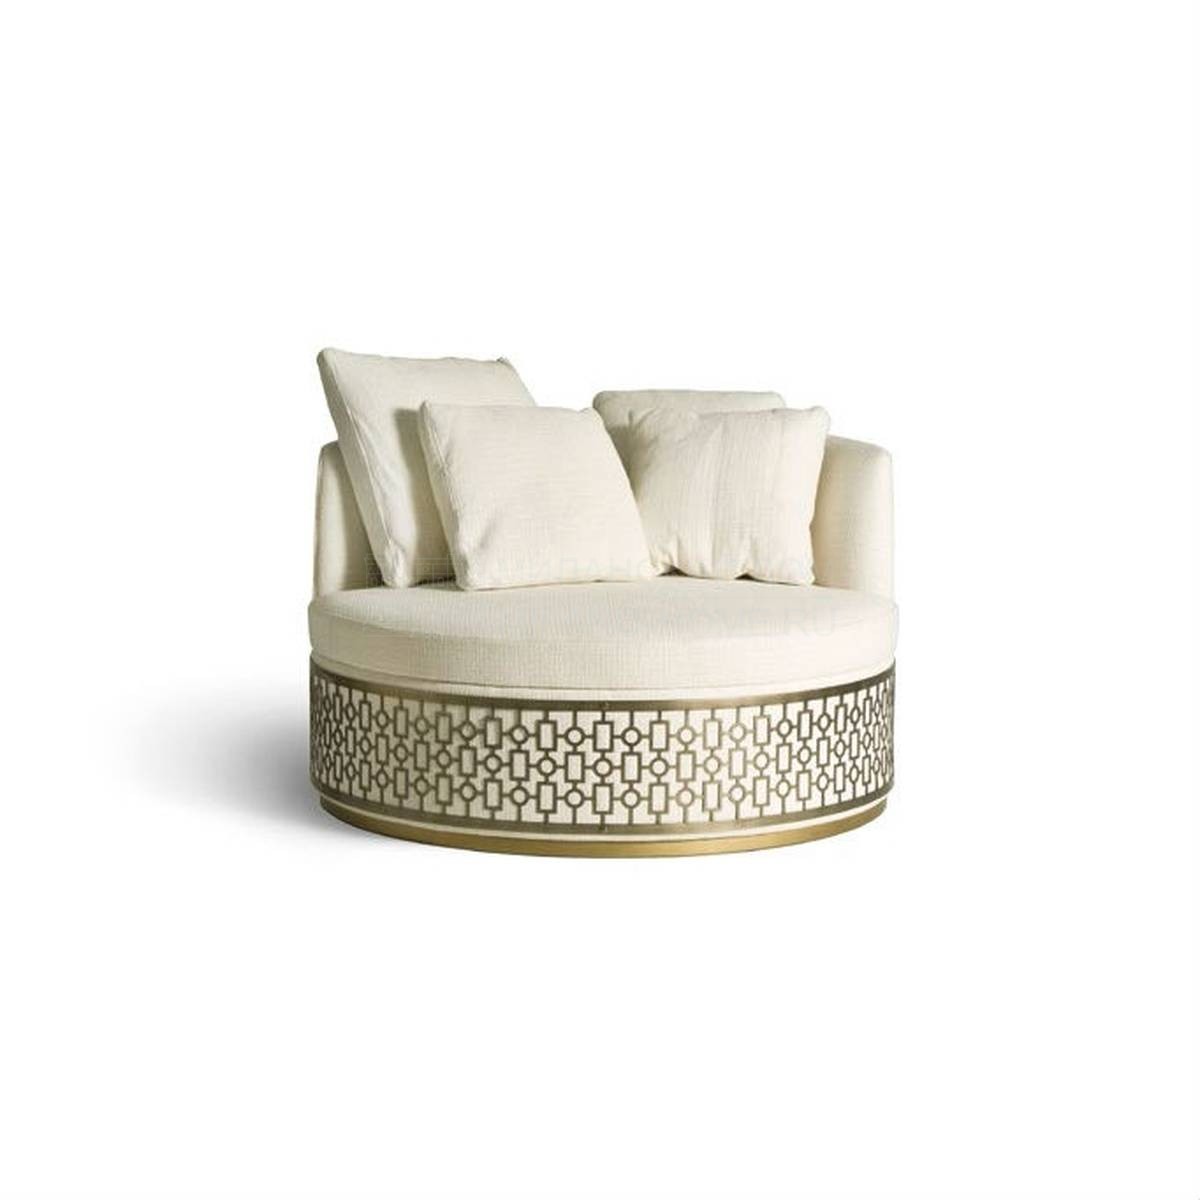 Круглое кресло Art.24106 armchair из Италии фабрики ANGELO CAPPELLINI 